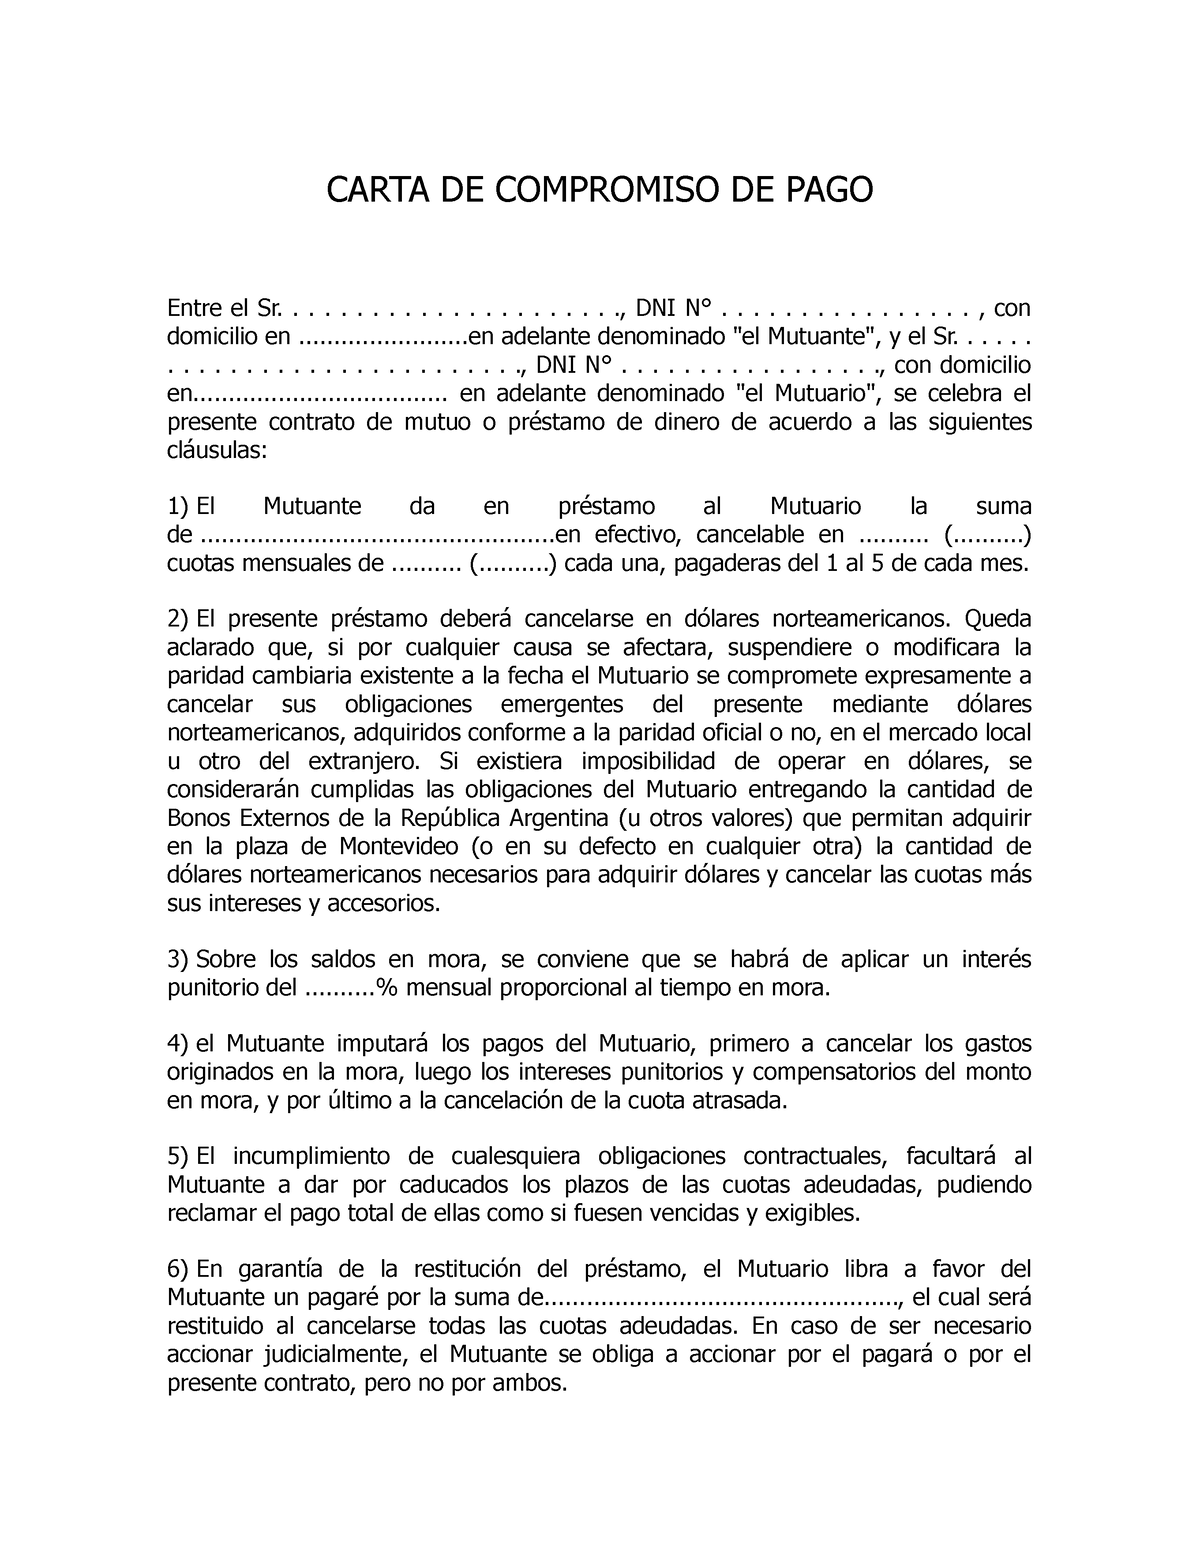 Modelo DE Carta DE Compromiso DE PAGO - CARTA DE COMPROMISO DE PAGO Entre  el Sr..................... - Studocu